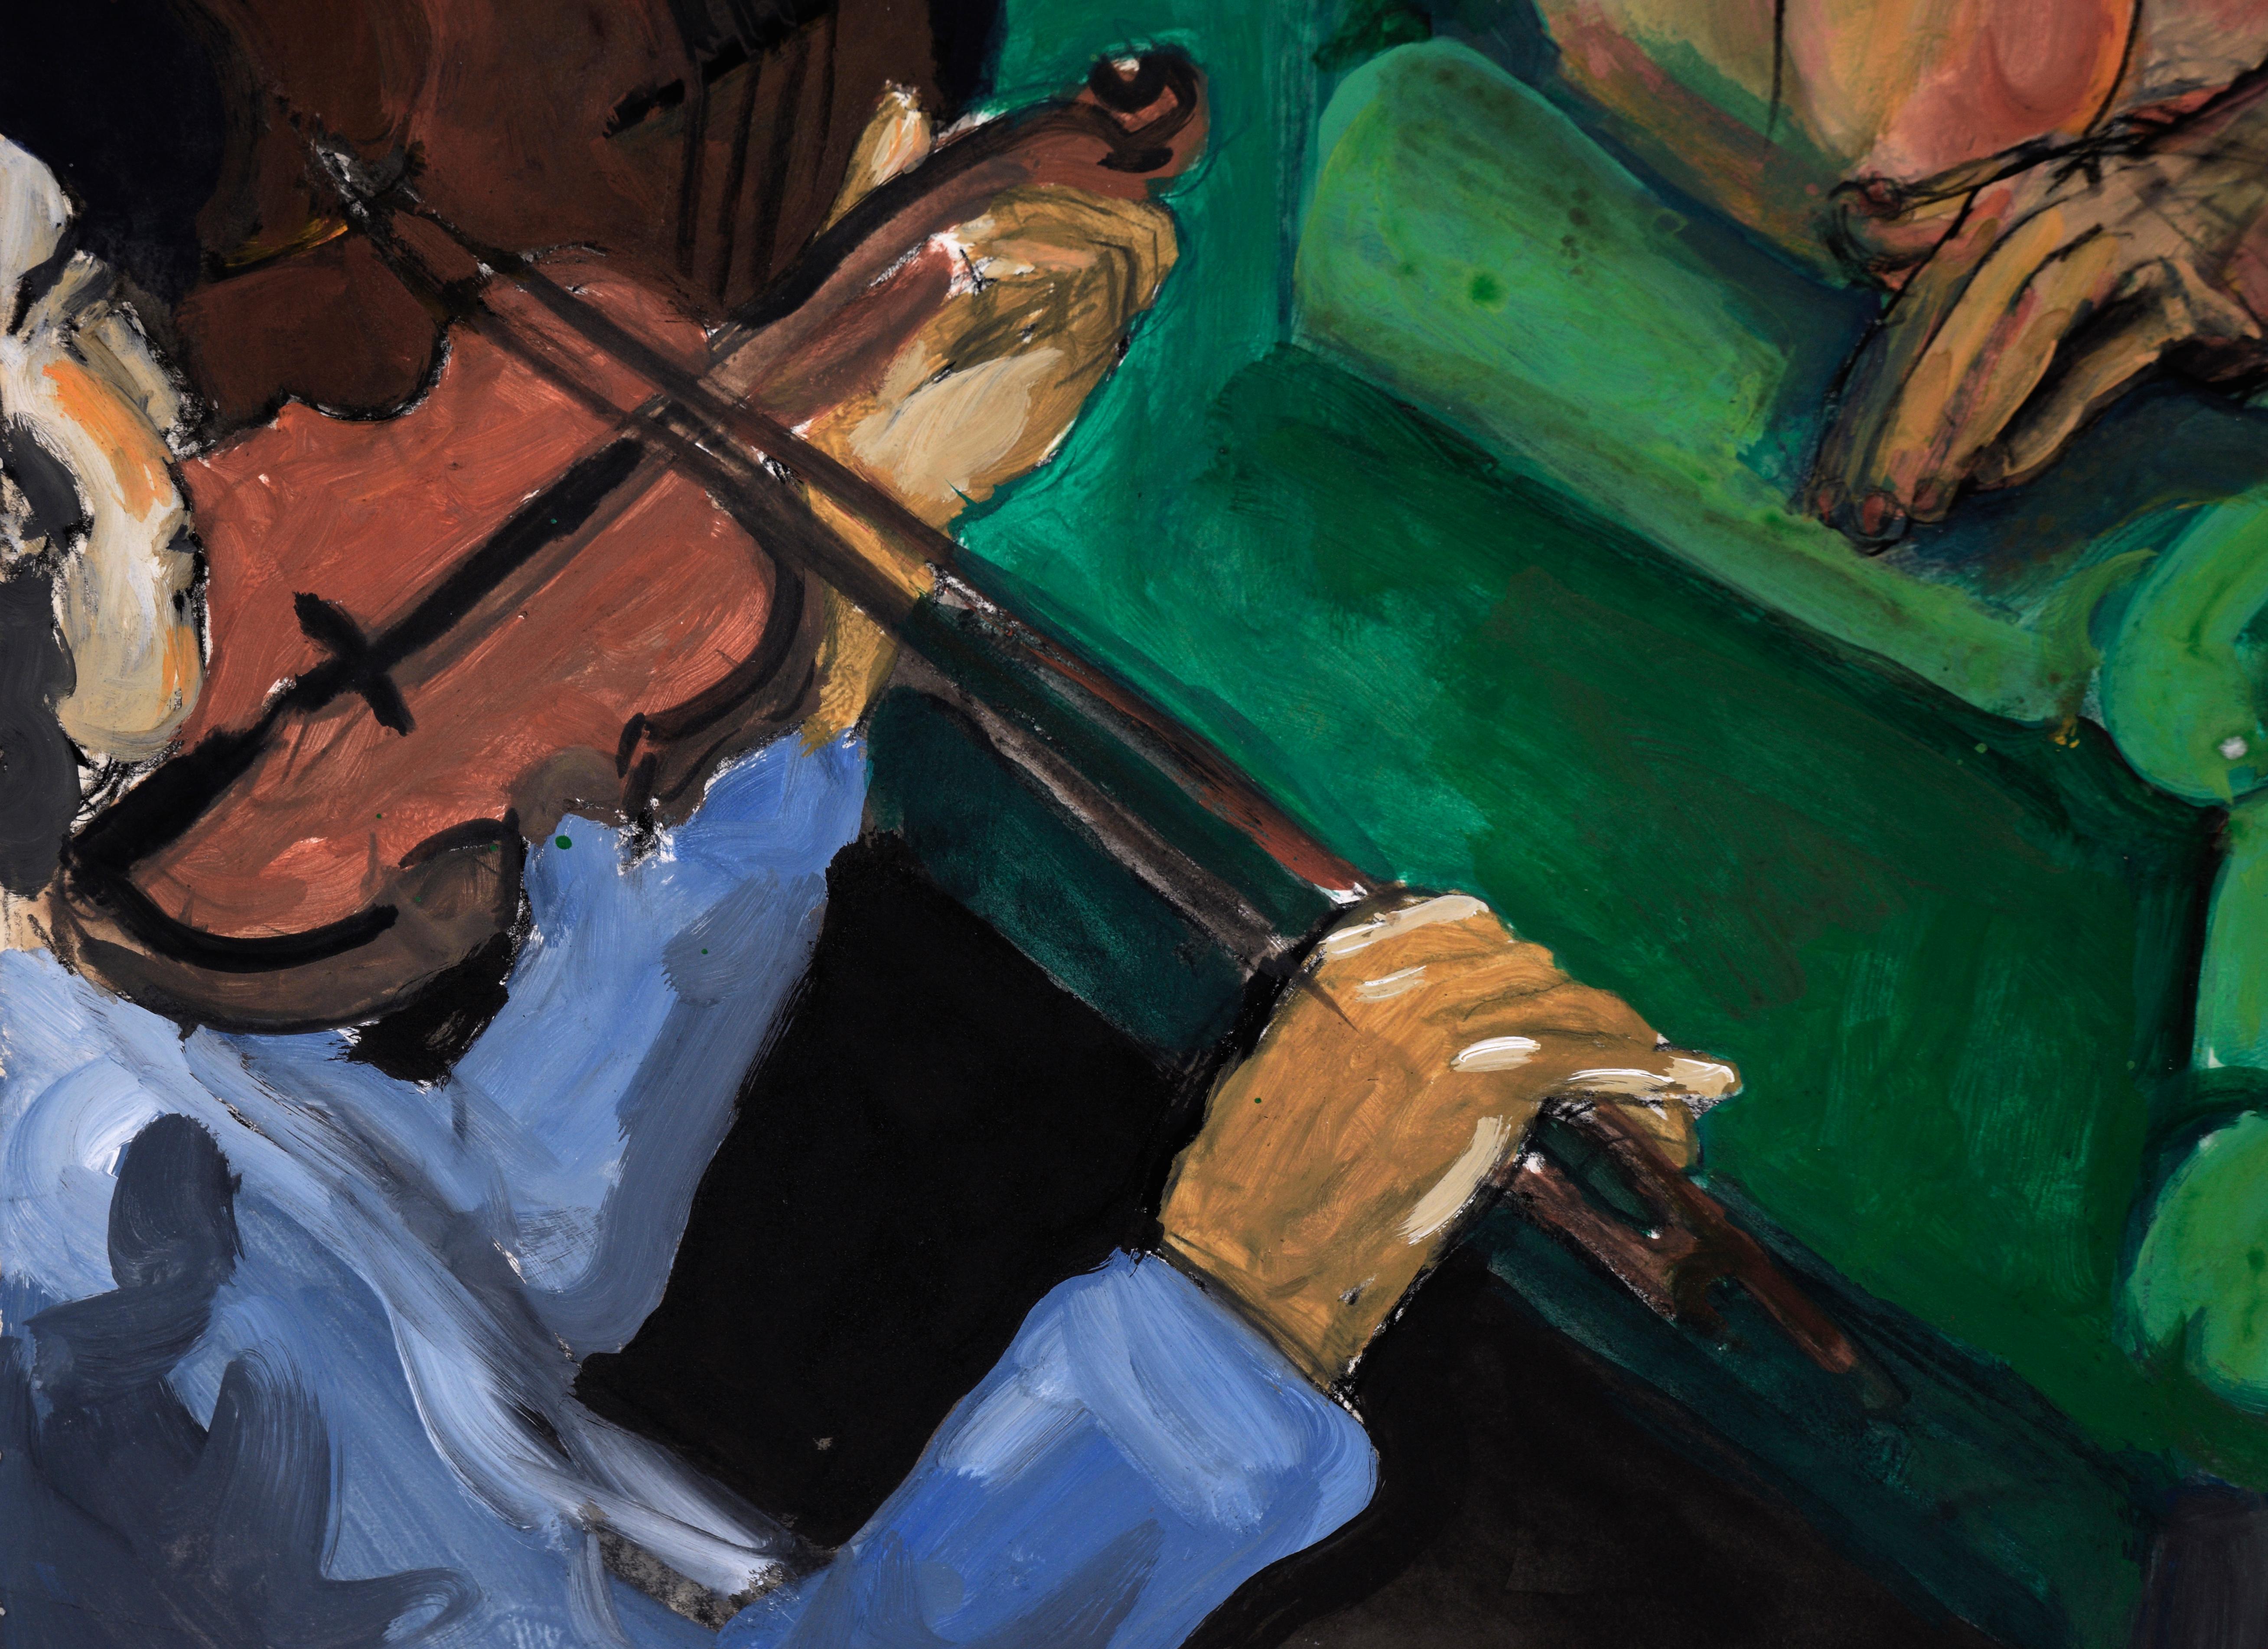 Violin Serenade - Blaues Gras im Akt Acryl Abstrakter Expressionismus auf Papier

Ein Akt, der in einem smaragdgrünen Stuhl liegt, bietet eine interessante Perspektive von oben durch die gefeierte Bluegrass-Musikerin und Künstlerin Katherine 